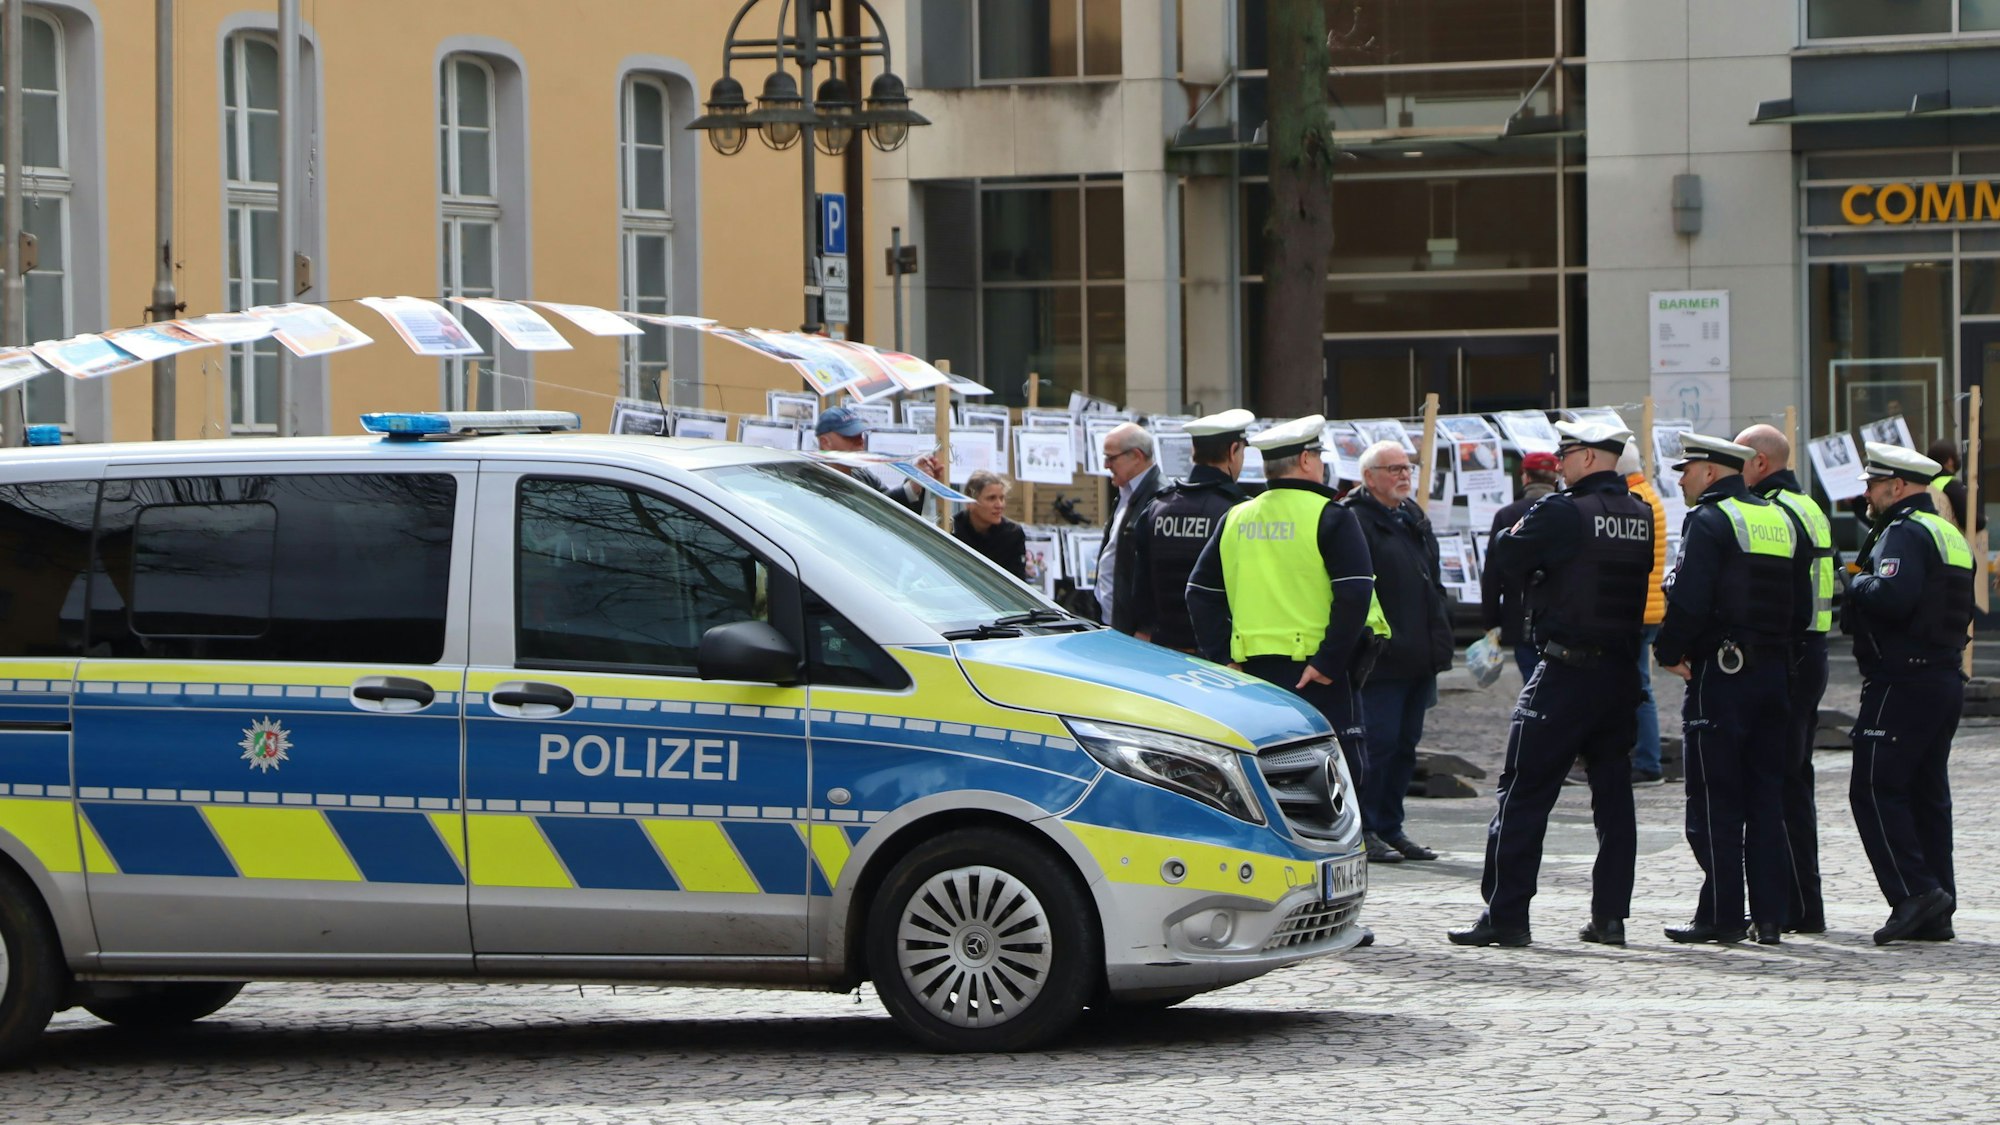 Auf dem Foto sind Polizisten vor dem Brühler Rathaus zu sehen. Im Hintergrund sind die Fotos von Menschen aus Kriegsgebieten zu sehen.